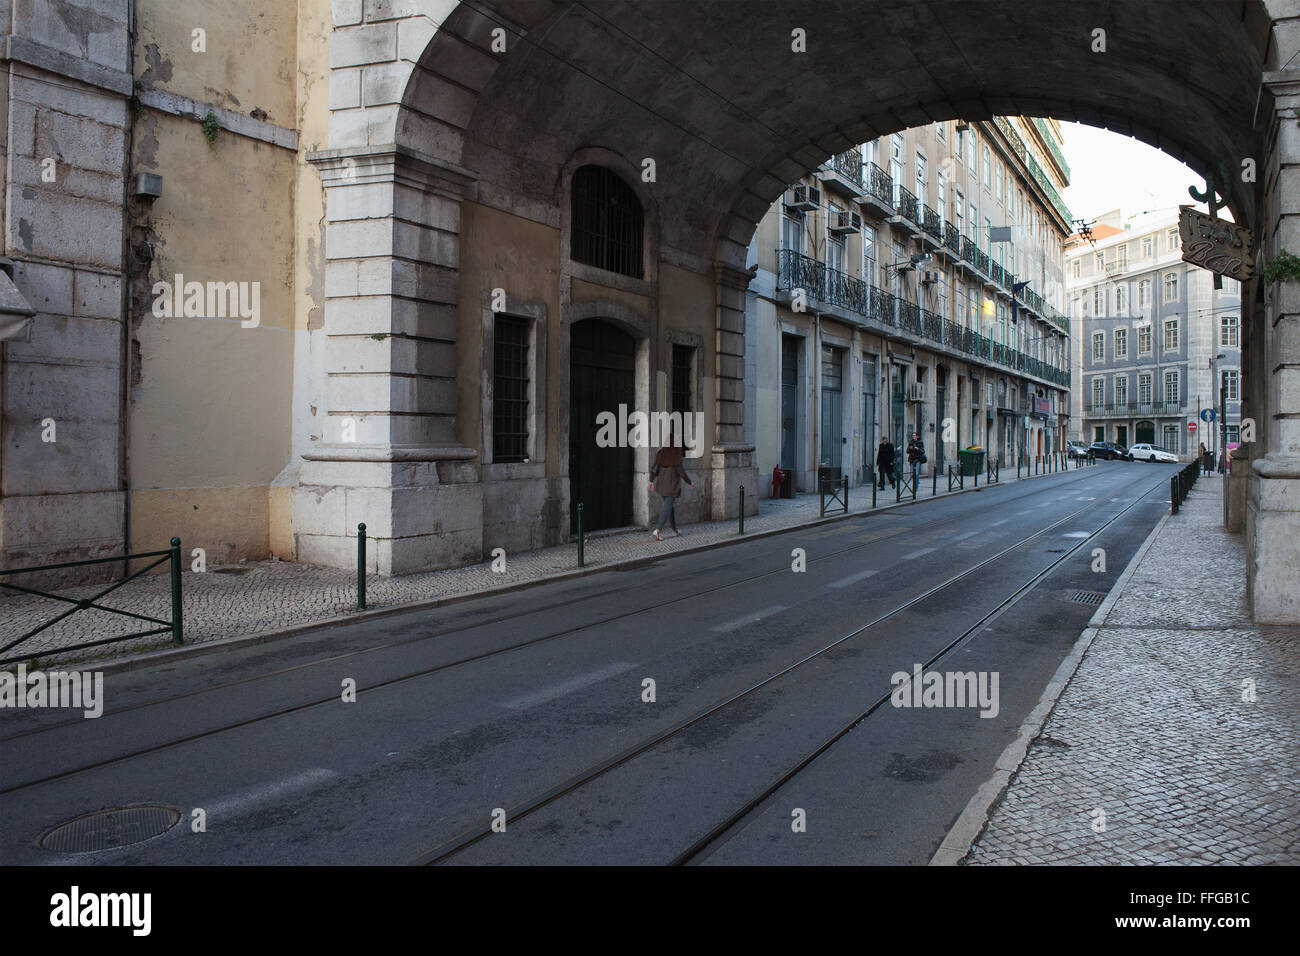 Le Portugal, ville de Lisbonne, la Rua de S. Paulo rue avec des rails du tramway sous le pont, paysage urbain Banque D'Images